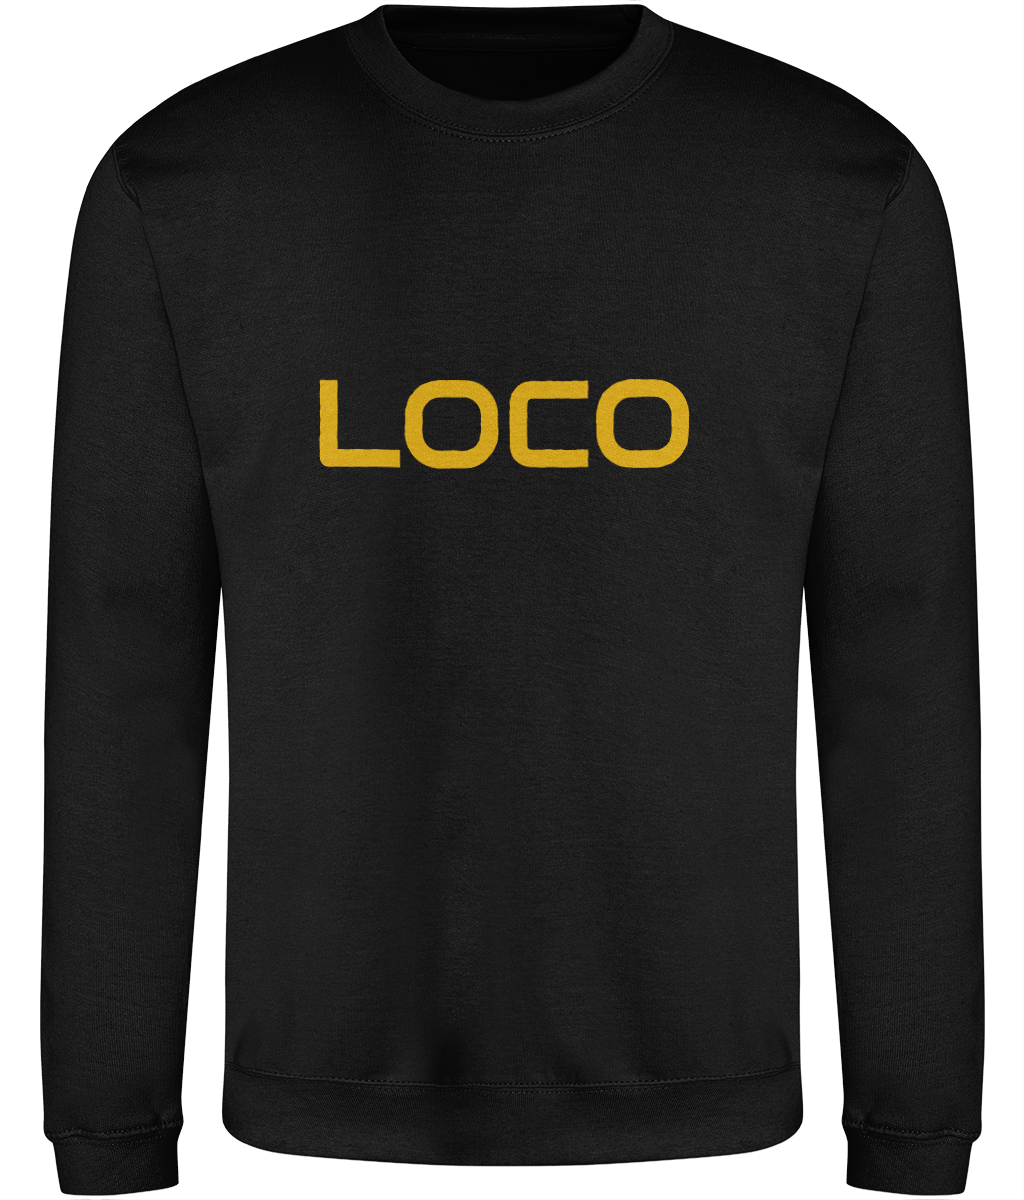 loco merchandise